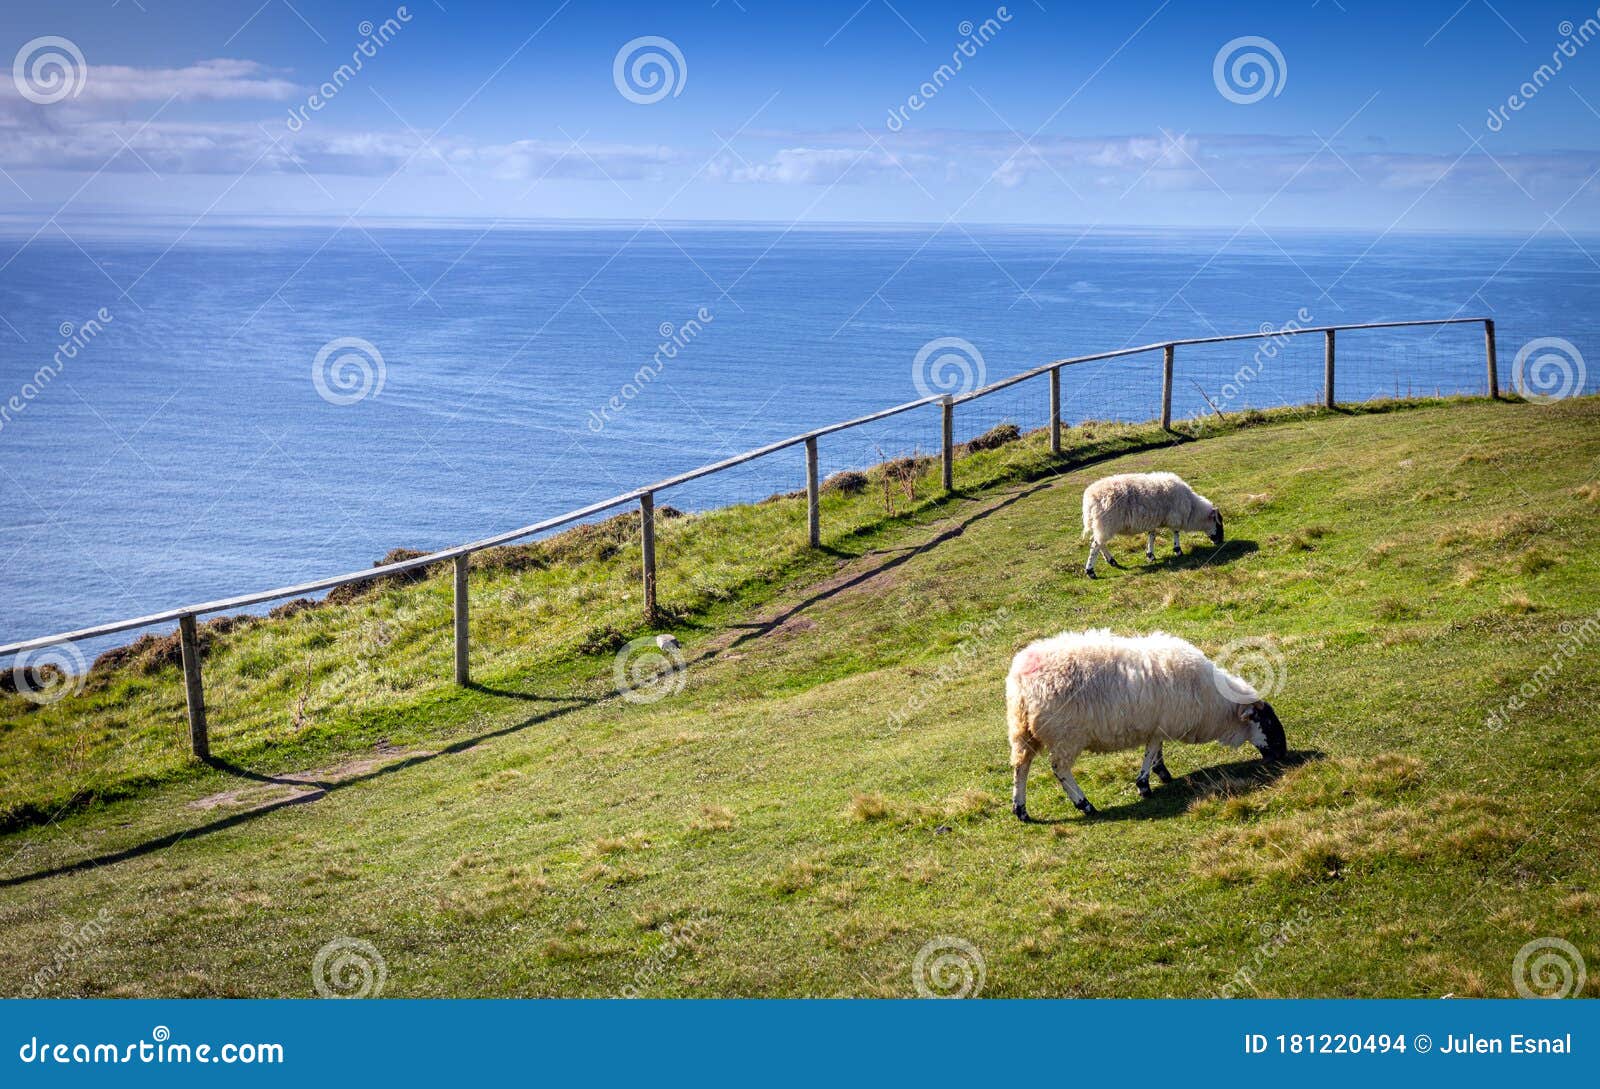 ovejas pastan junto al mar en un acantilado